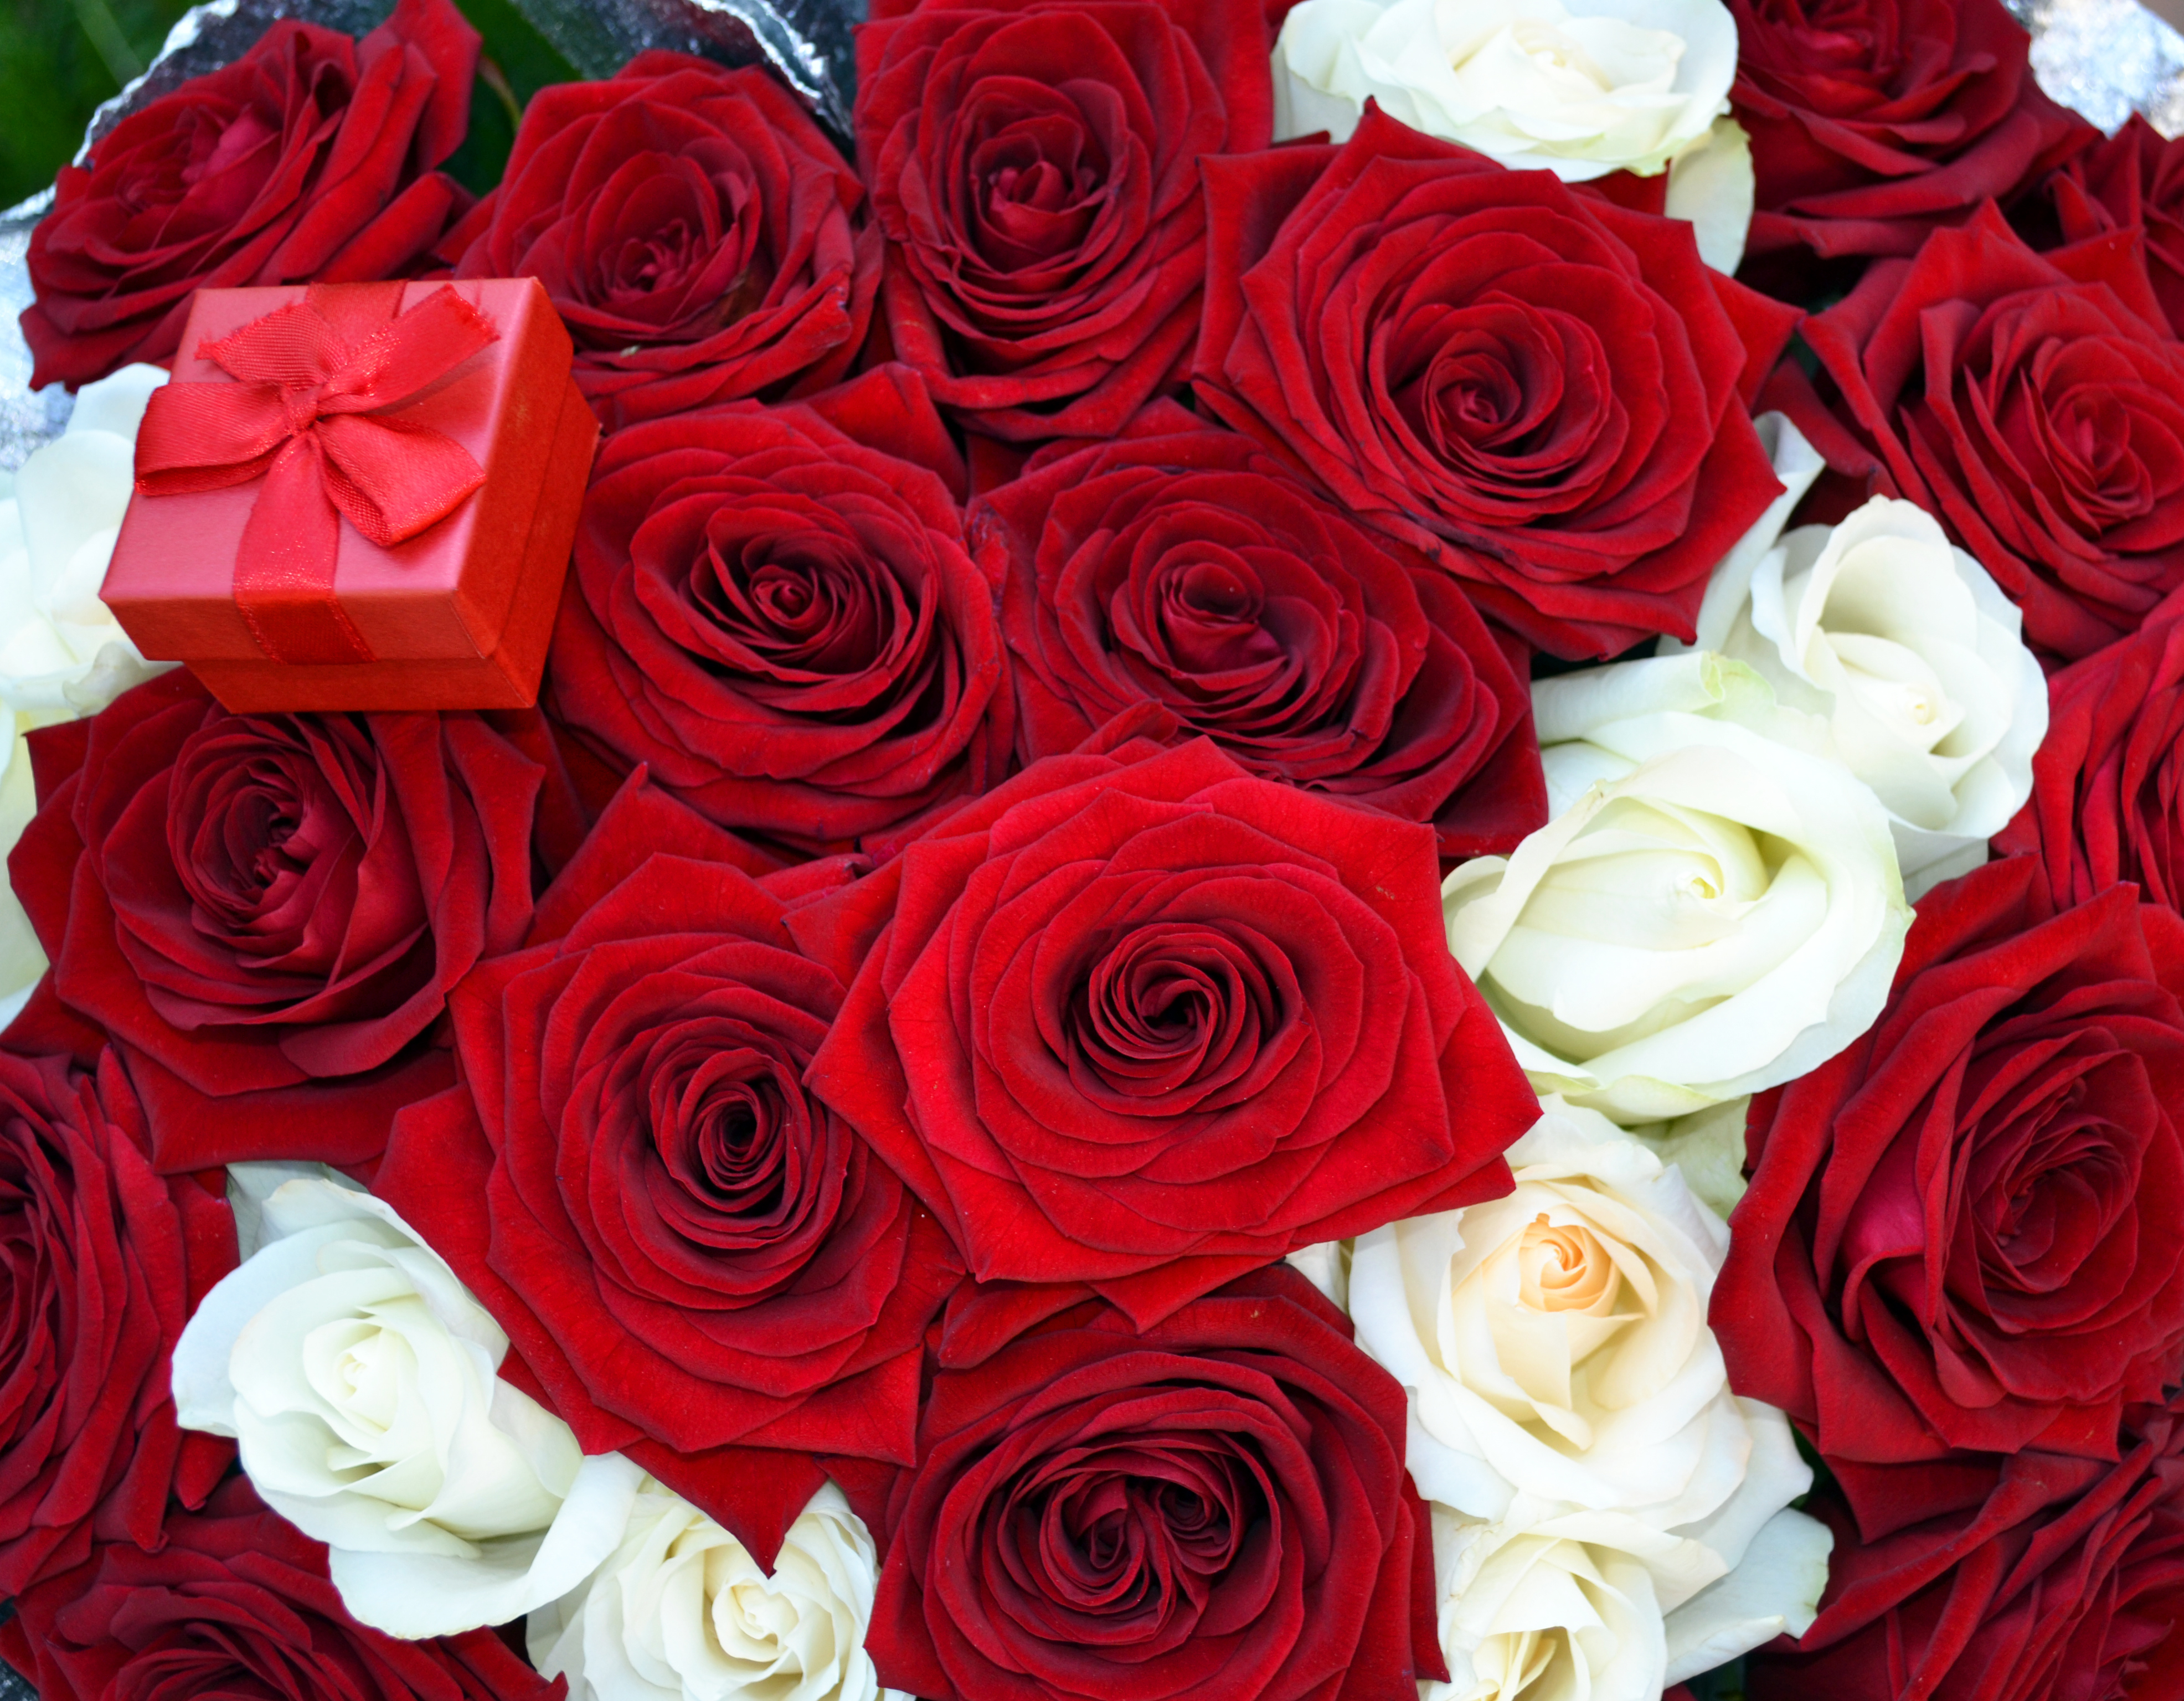 Розы были красивы и пышны пробежав. Красивый букет роз. Шикарный букет роз. Красивый букет красных роз.